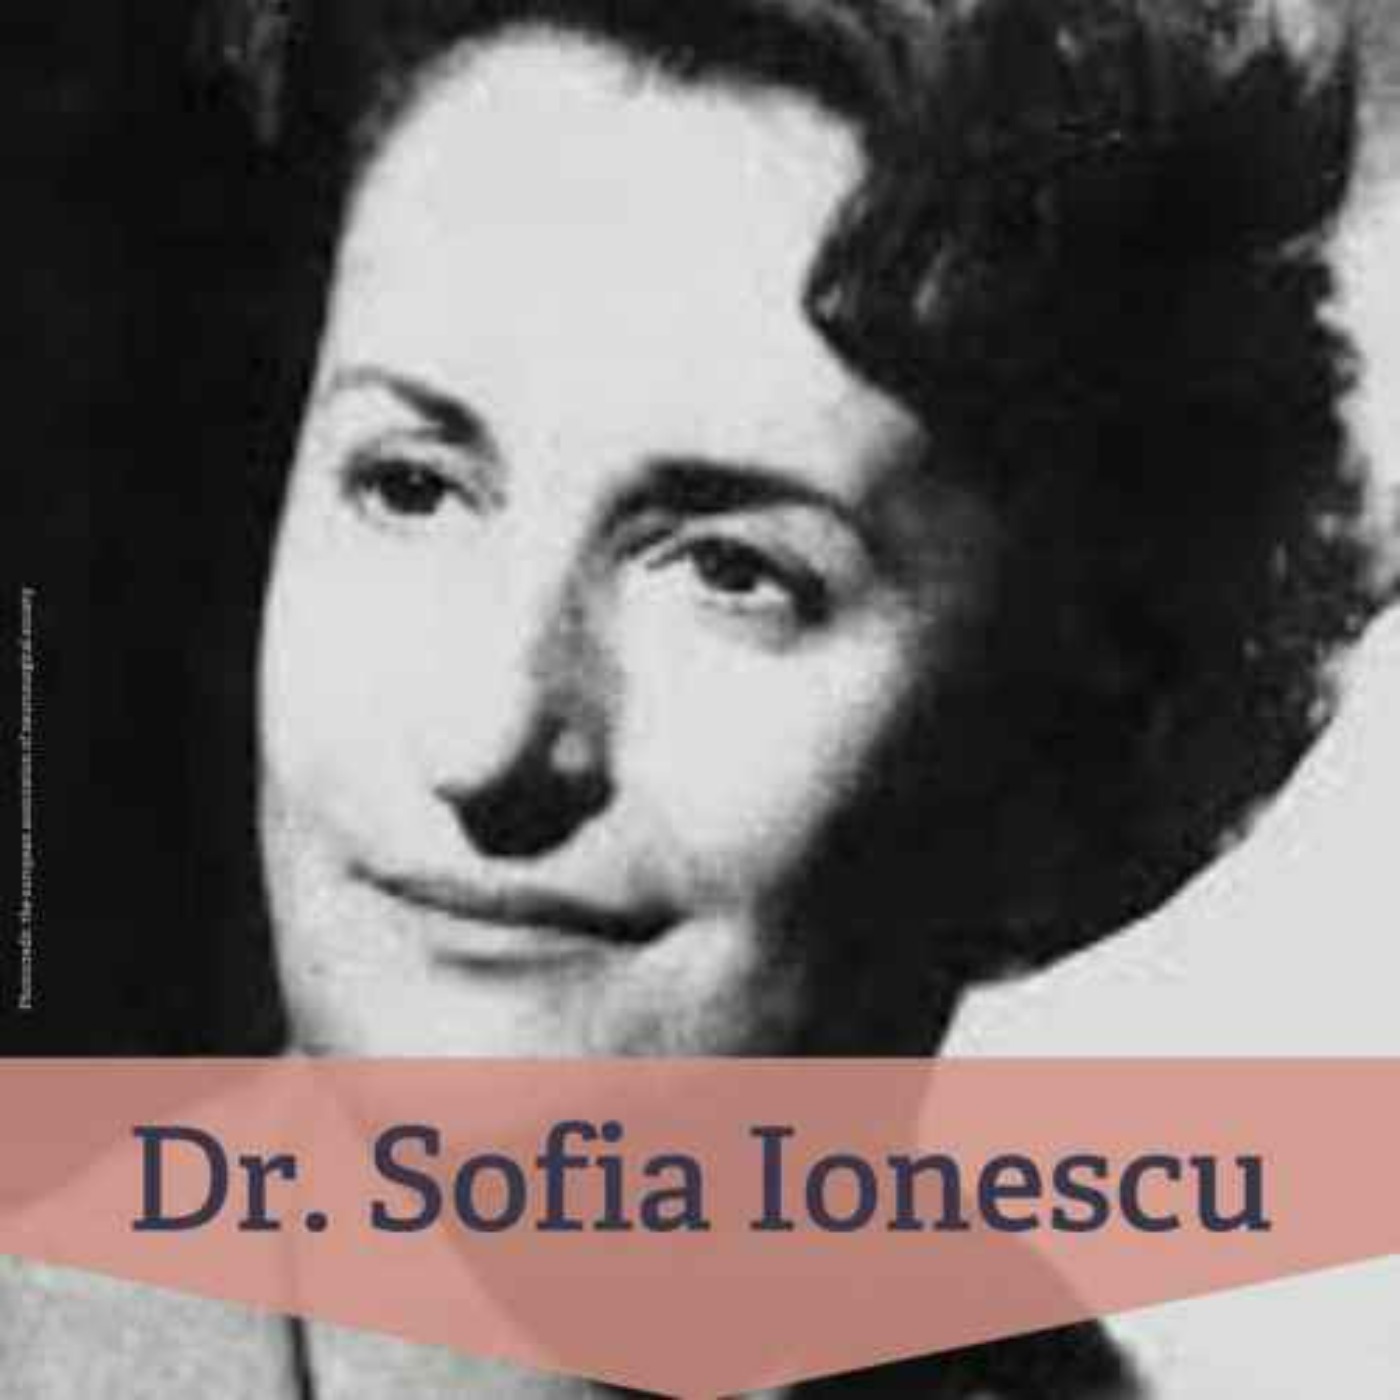 RELISTEN - #205 Dr. Sofia Ionescu – erste Neurochirurgin der Welt